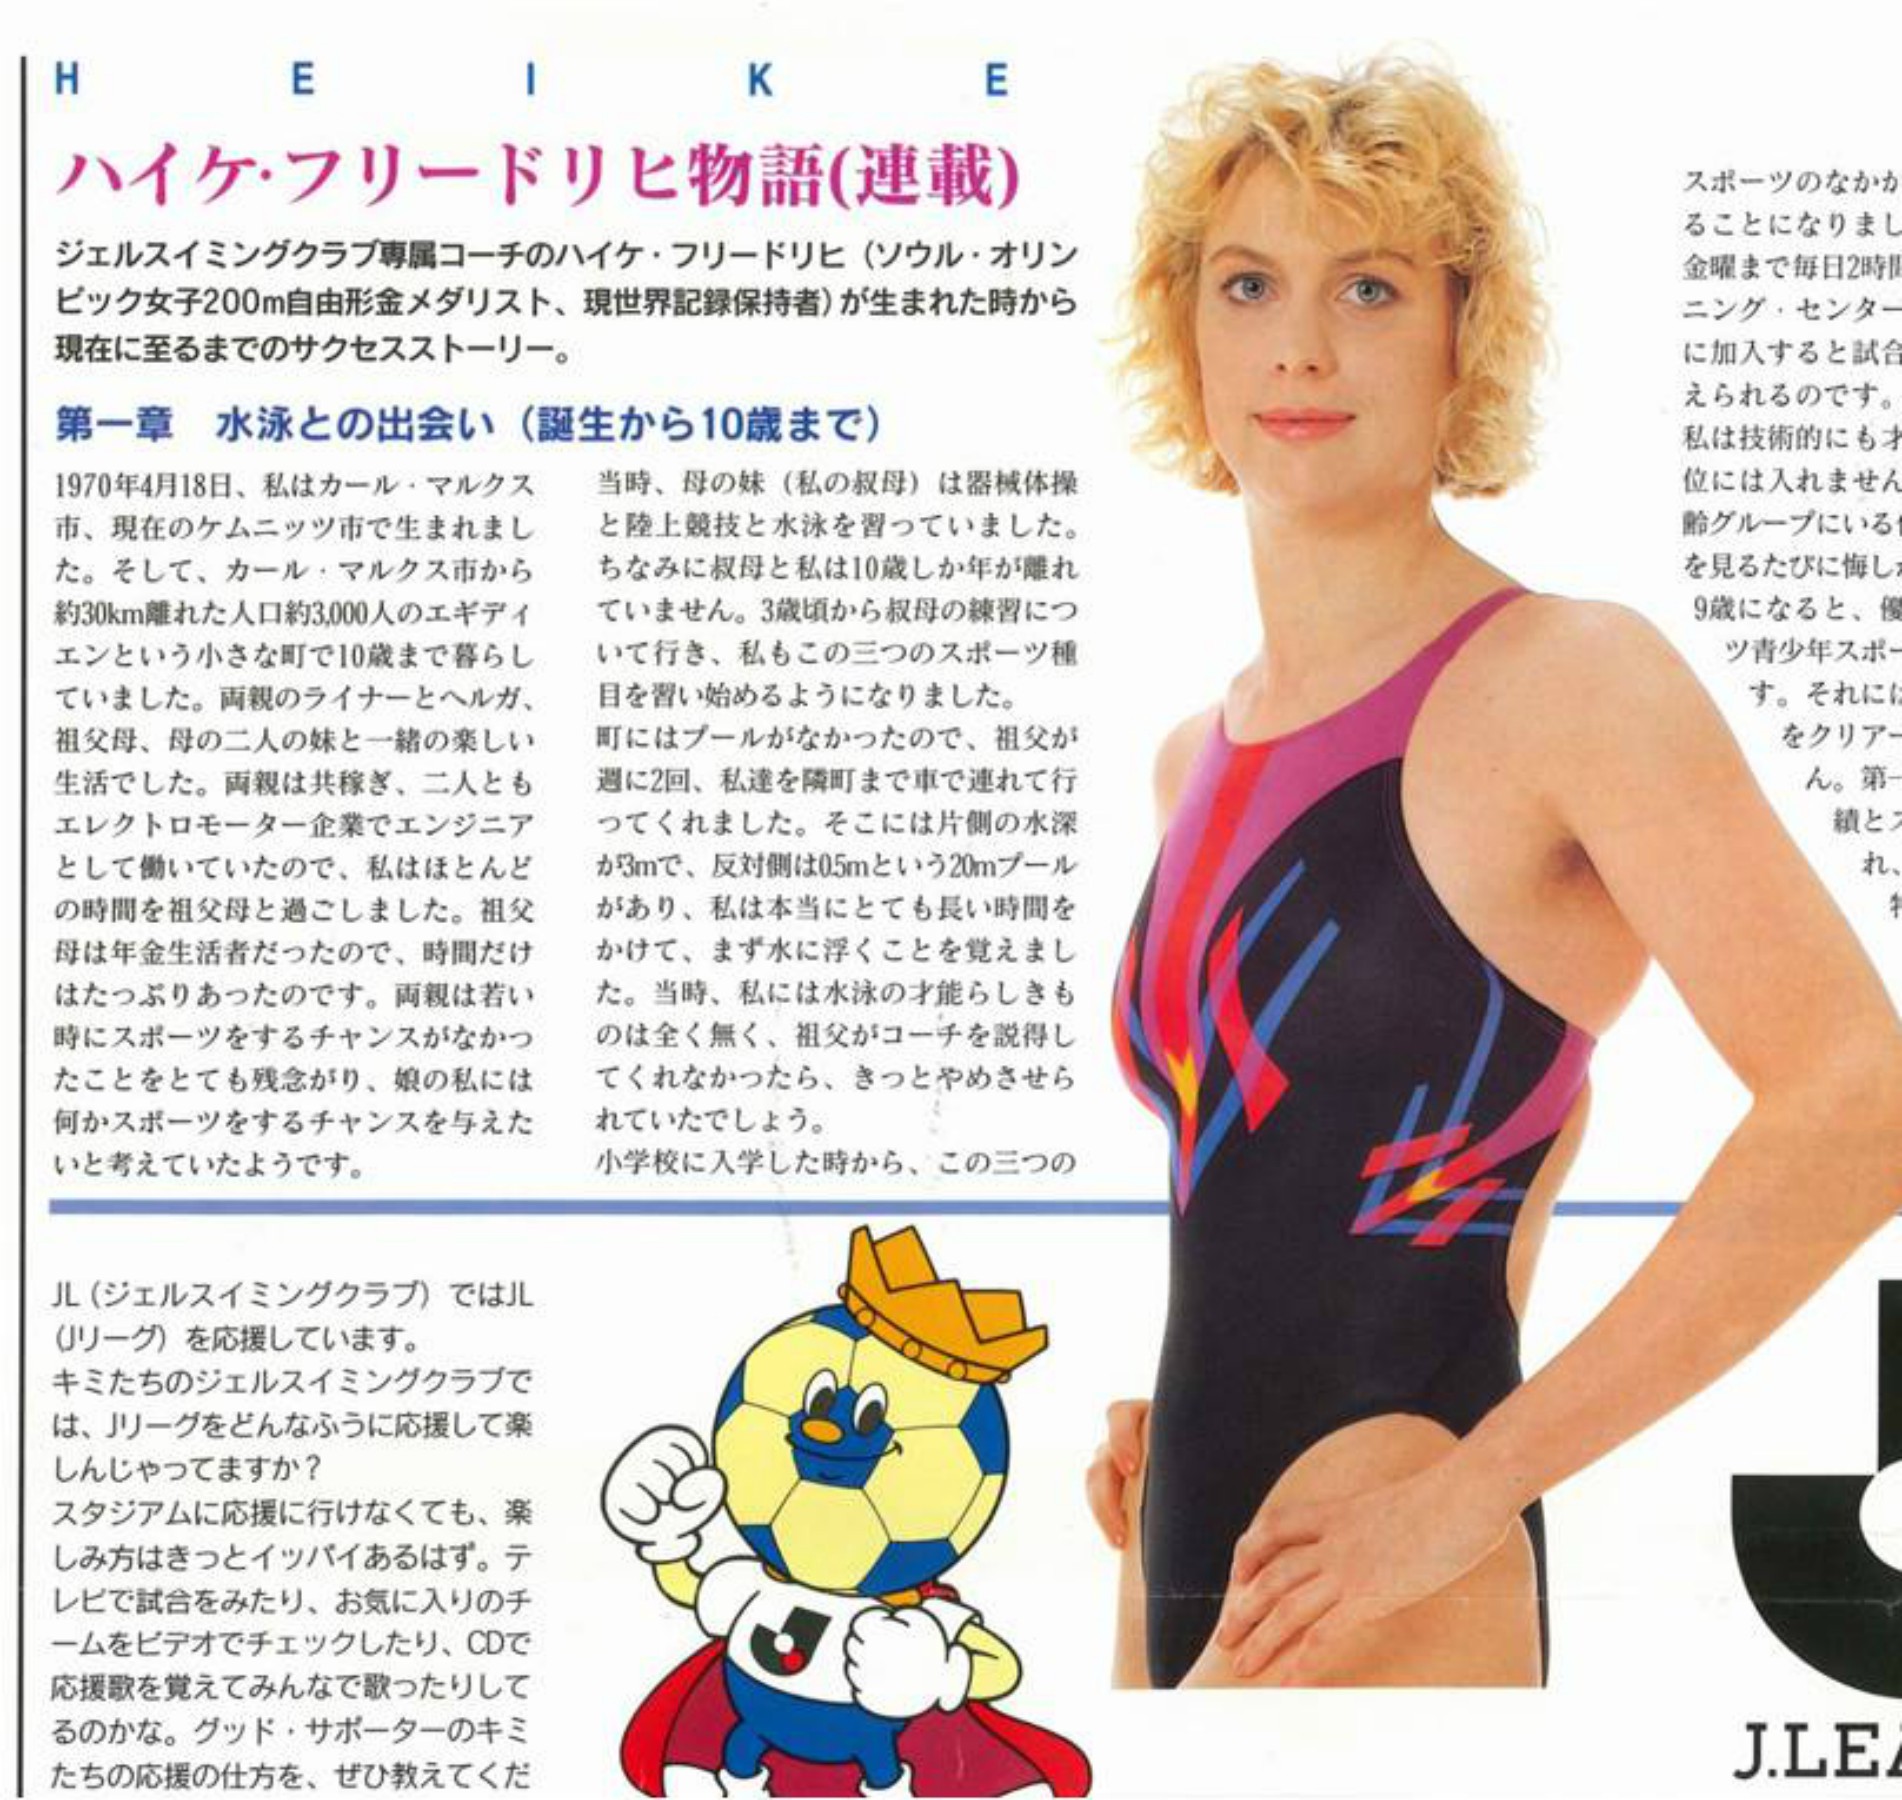 Vereinszeitschrift JL Swimming Club Japan